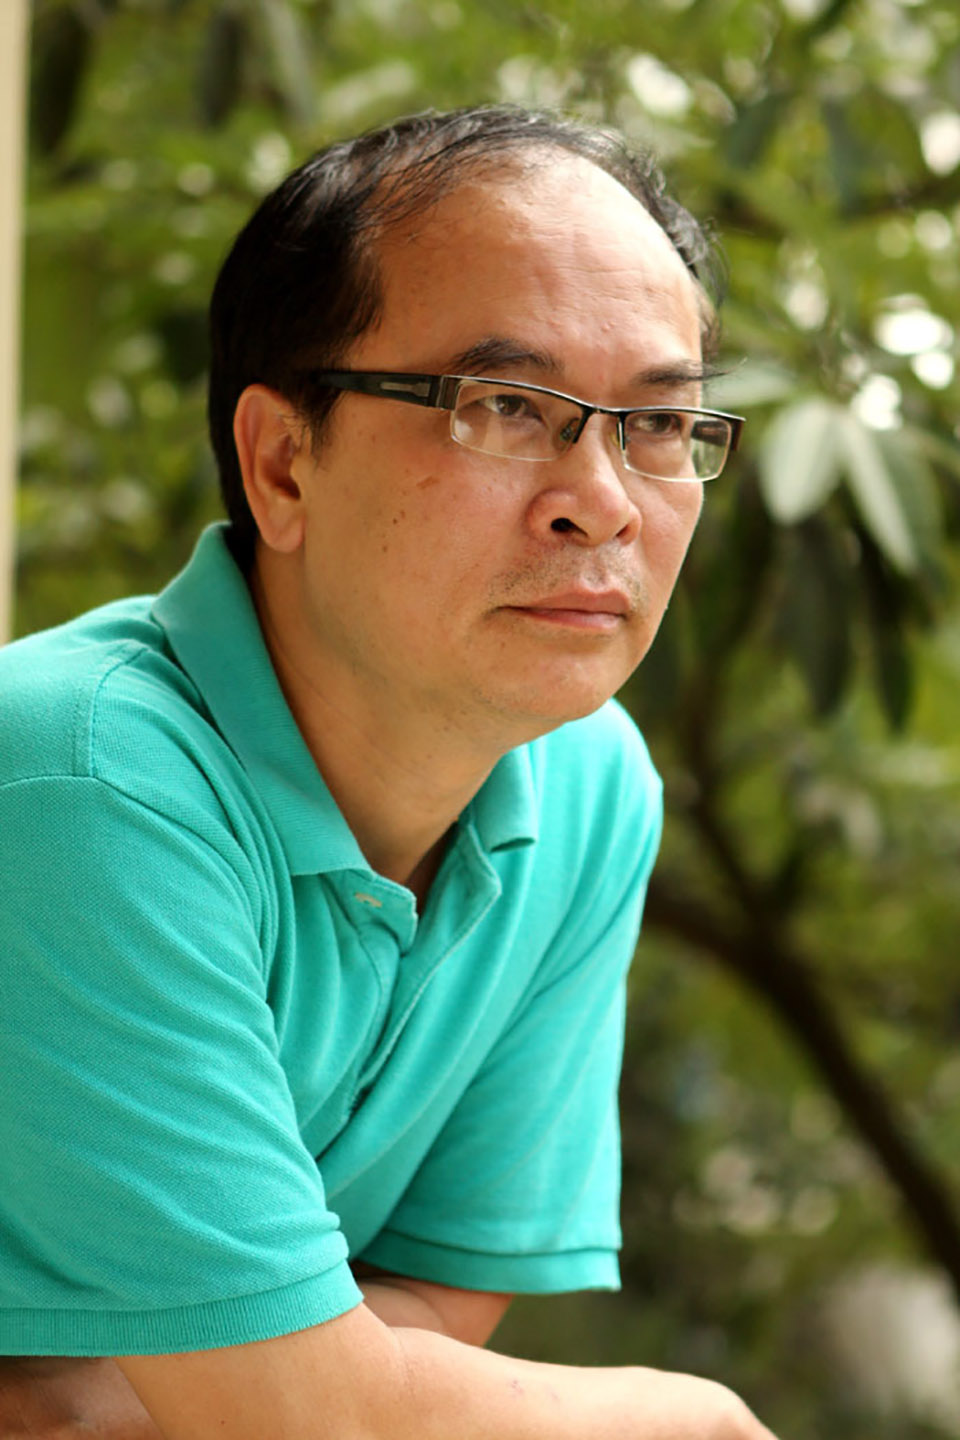 Nhạc sĩ Tào Tuấn Phương - người được mệnh danh vua nhạc phim truyền hình là thành viên ban giám khảo